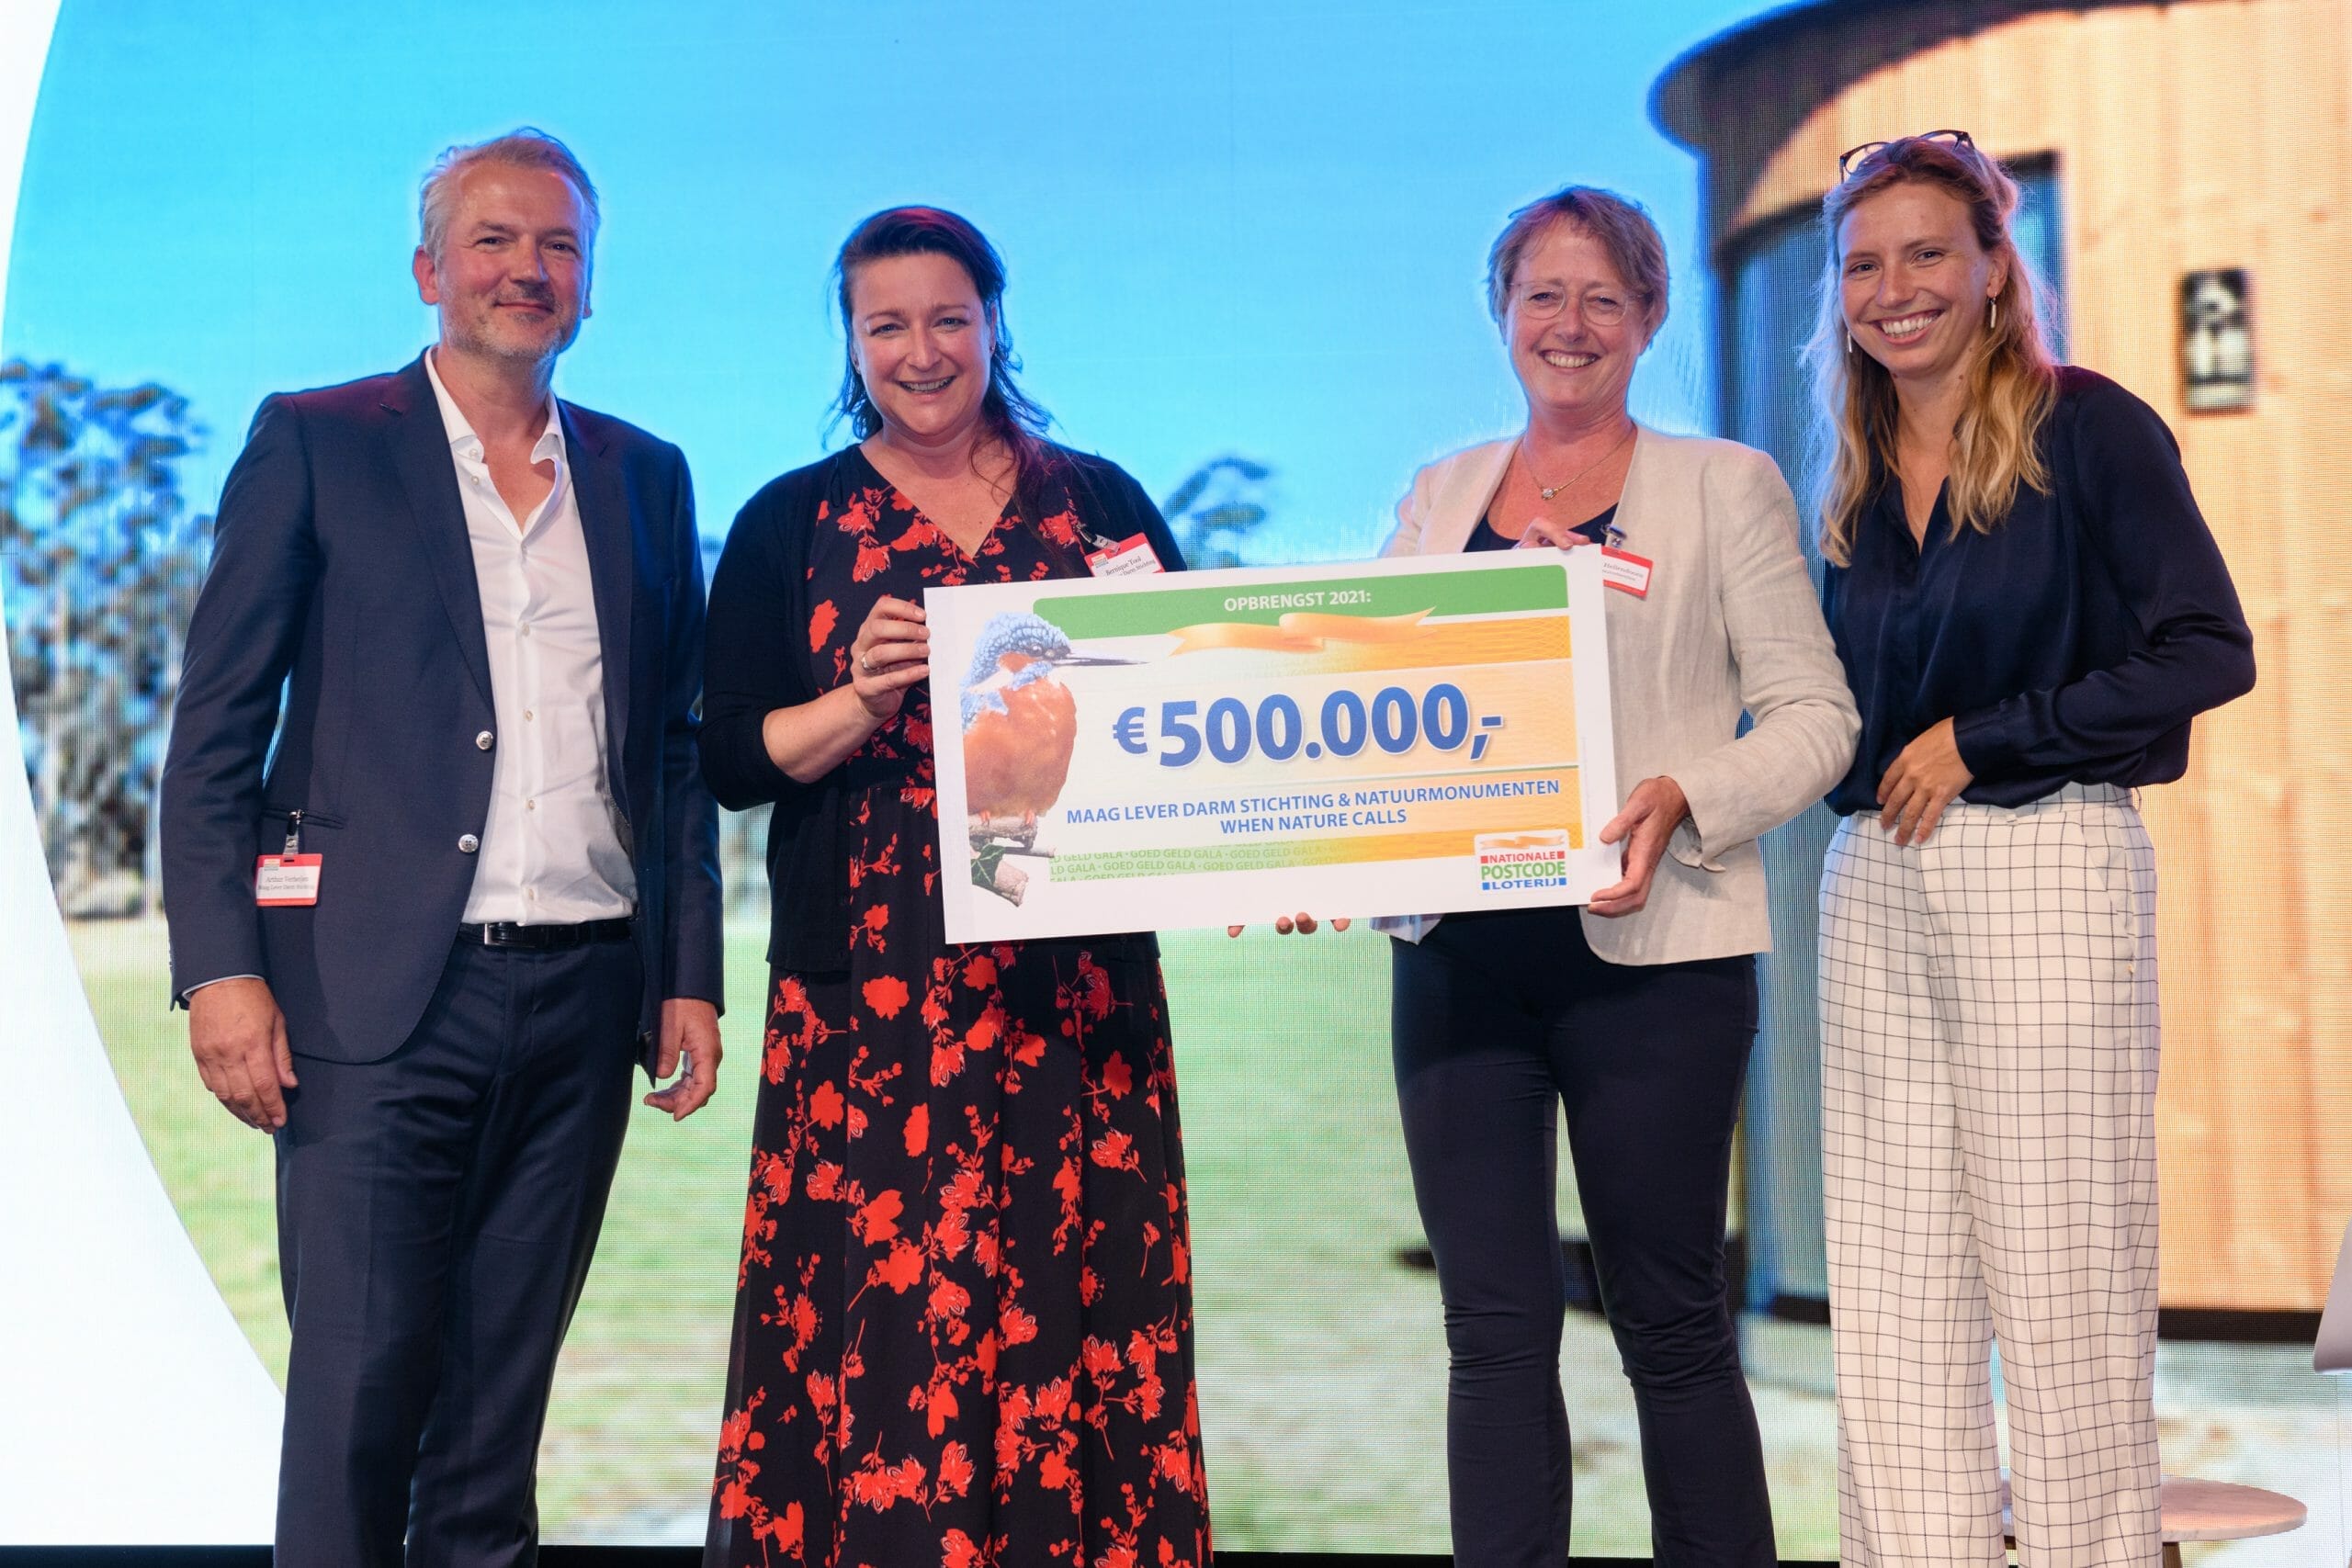 De cheque ter waarde van 500.000 euro wordt overhandigd aan Bernique Tool van de Maag Lever Darm Stichting (links) en Barbara Hellendoorn van Natuurmonumenten (rechts).